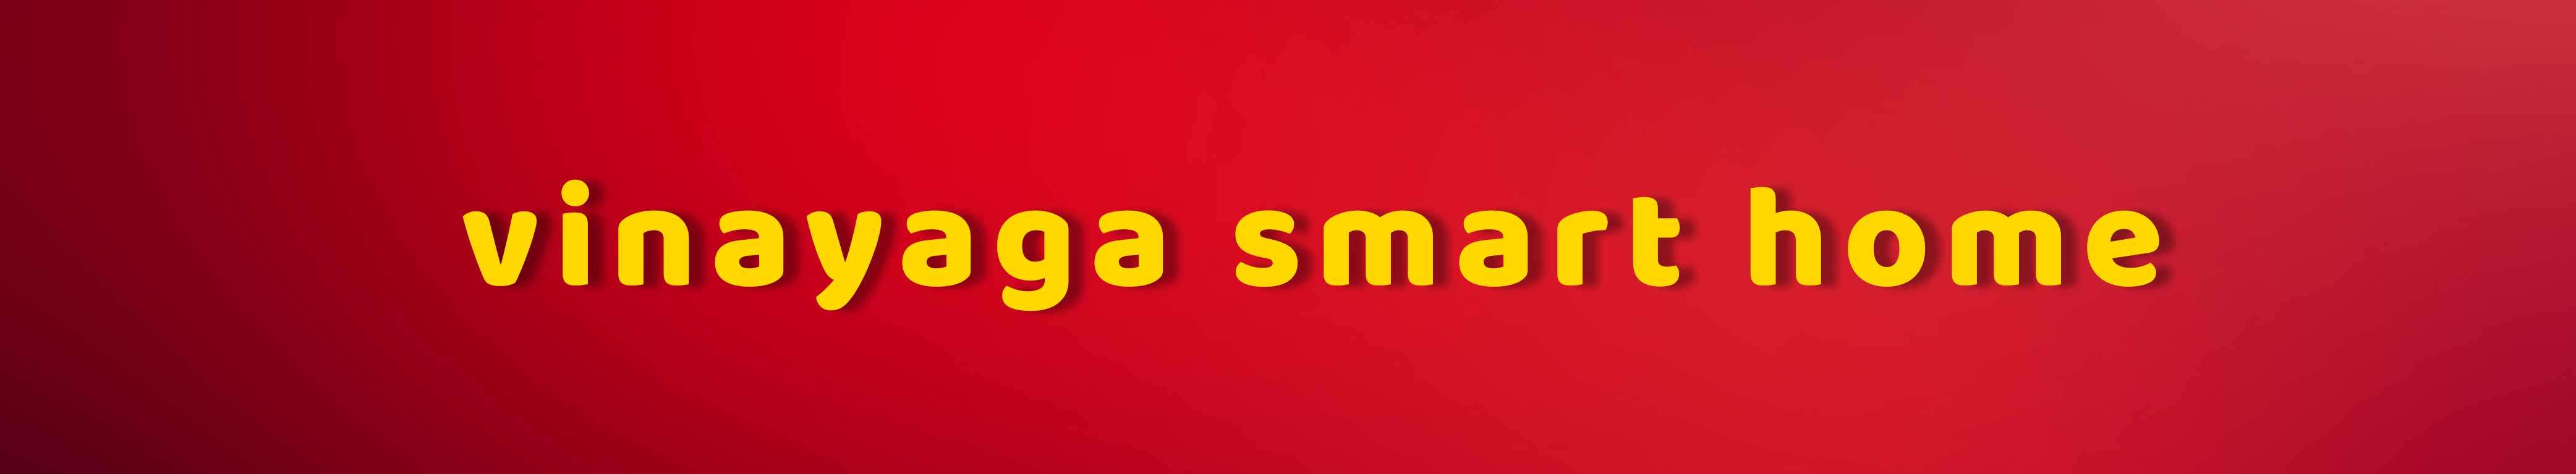 VINAYAGA SMART HOME Banner Image